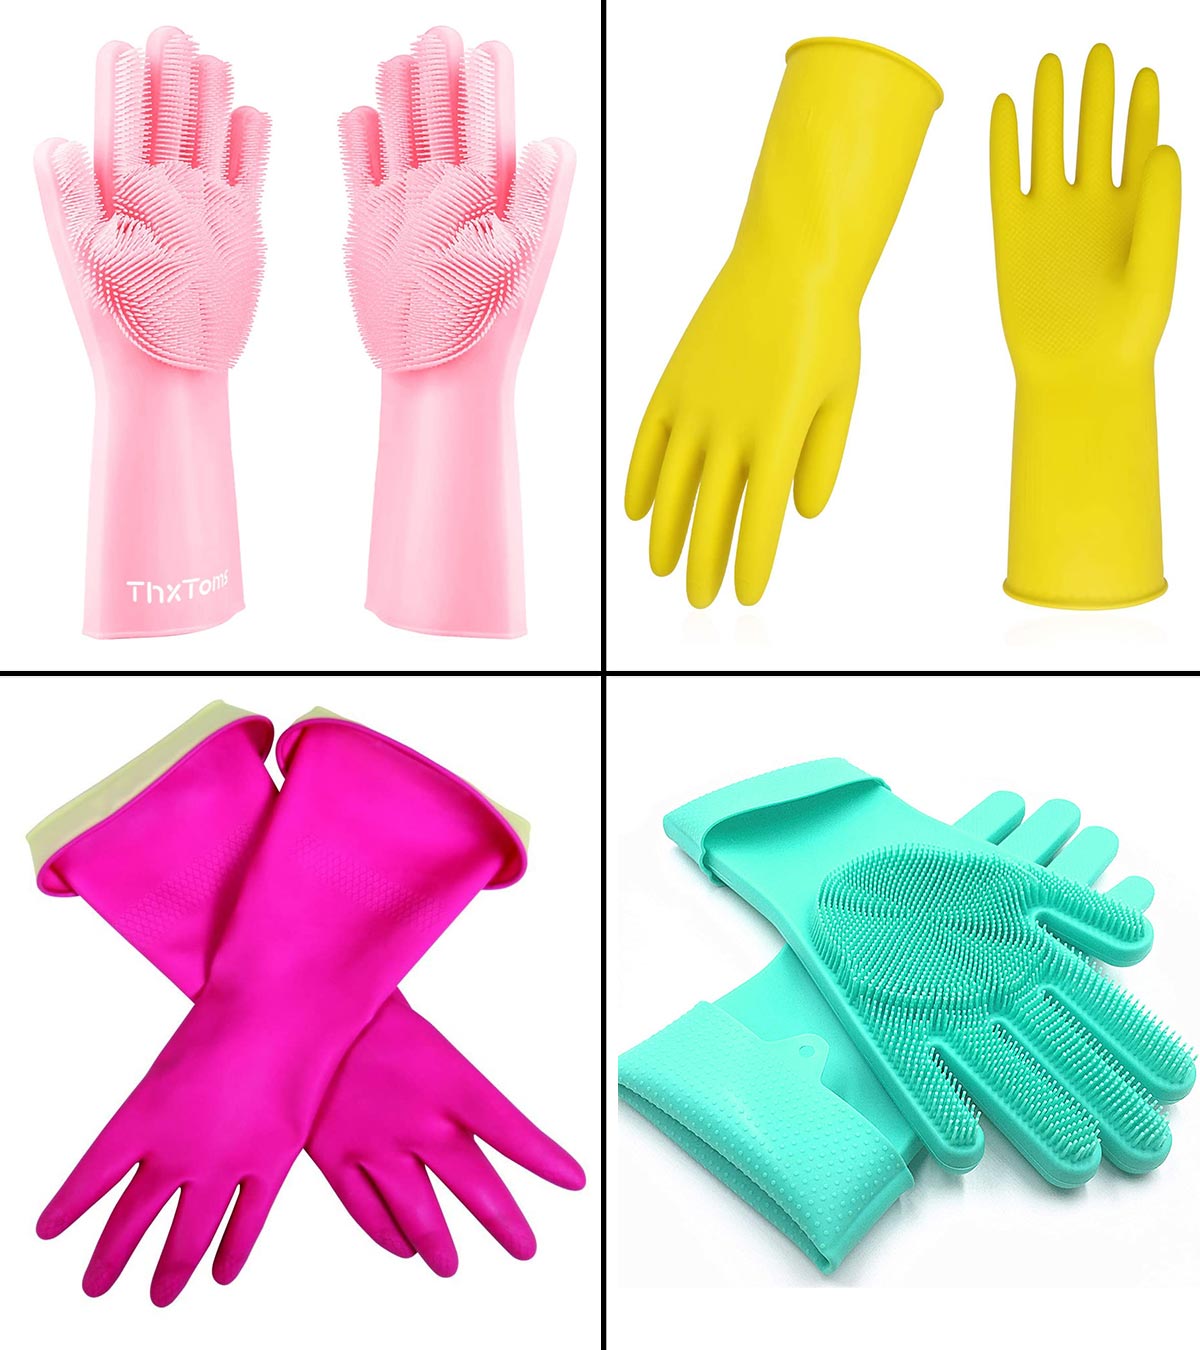 Washing Up Gloves Latex Free Gloves for Kitchen Dishwashing Laundry Household 